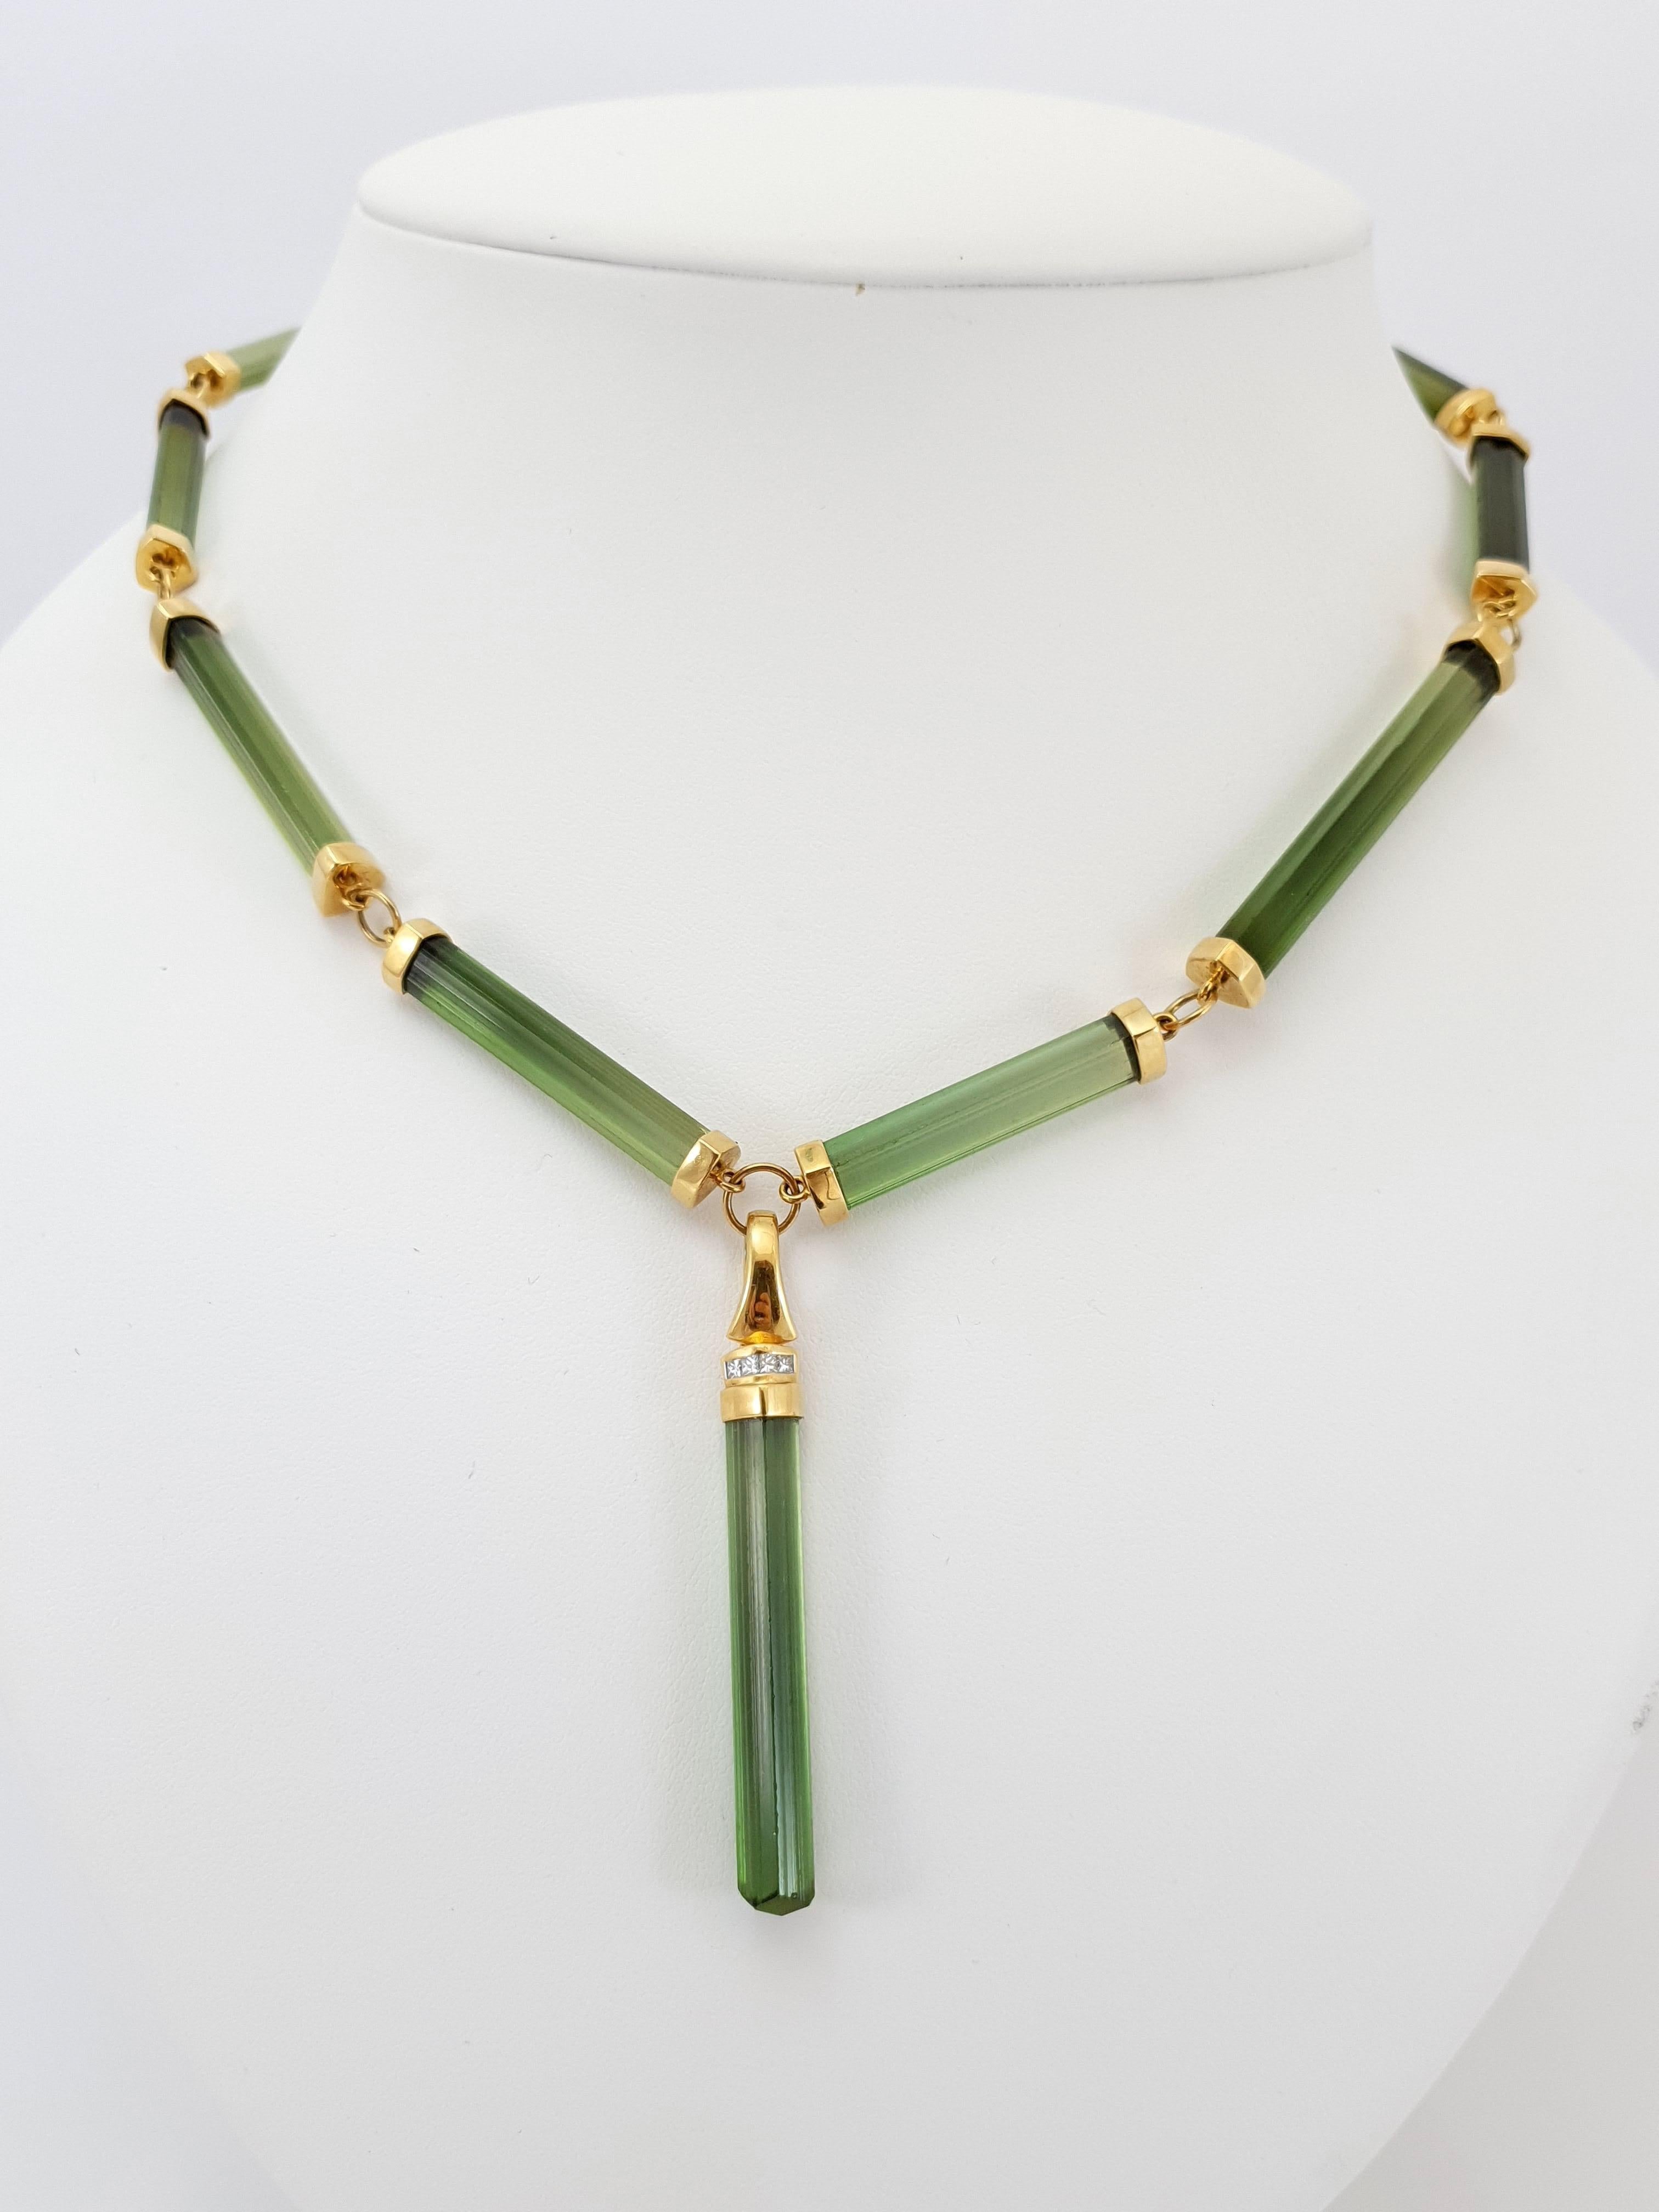 Ce collier en perles de tourmaline verte naturelle avec or jaune 18 carats/diamants est entièrement fait à la main.
La découpe ainsi que l'orfèvrerie sont réalisées en qualité allemande. Le fermoir en forme de homard est facile à manipuler.
La